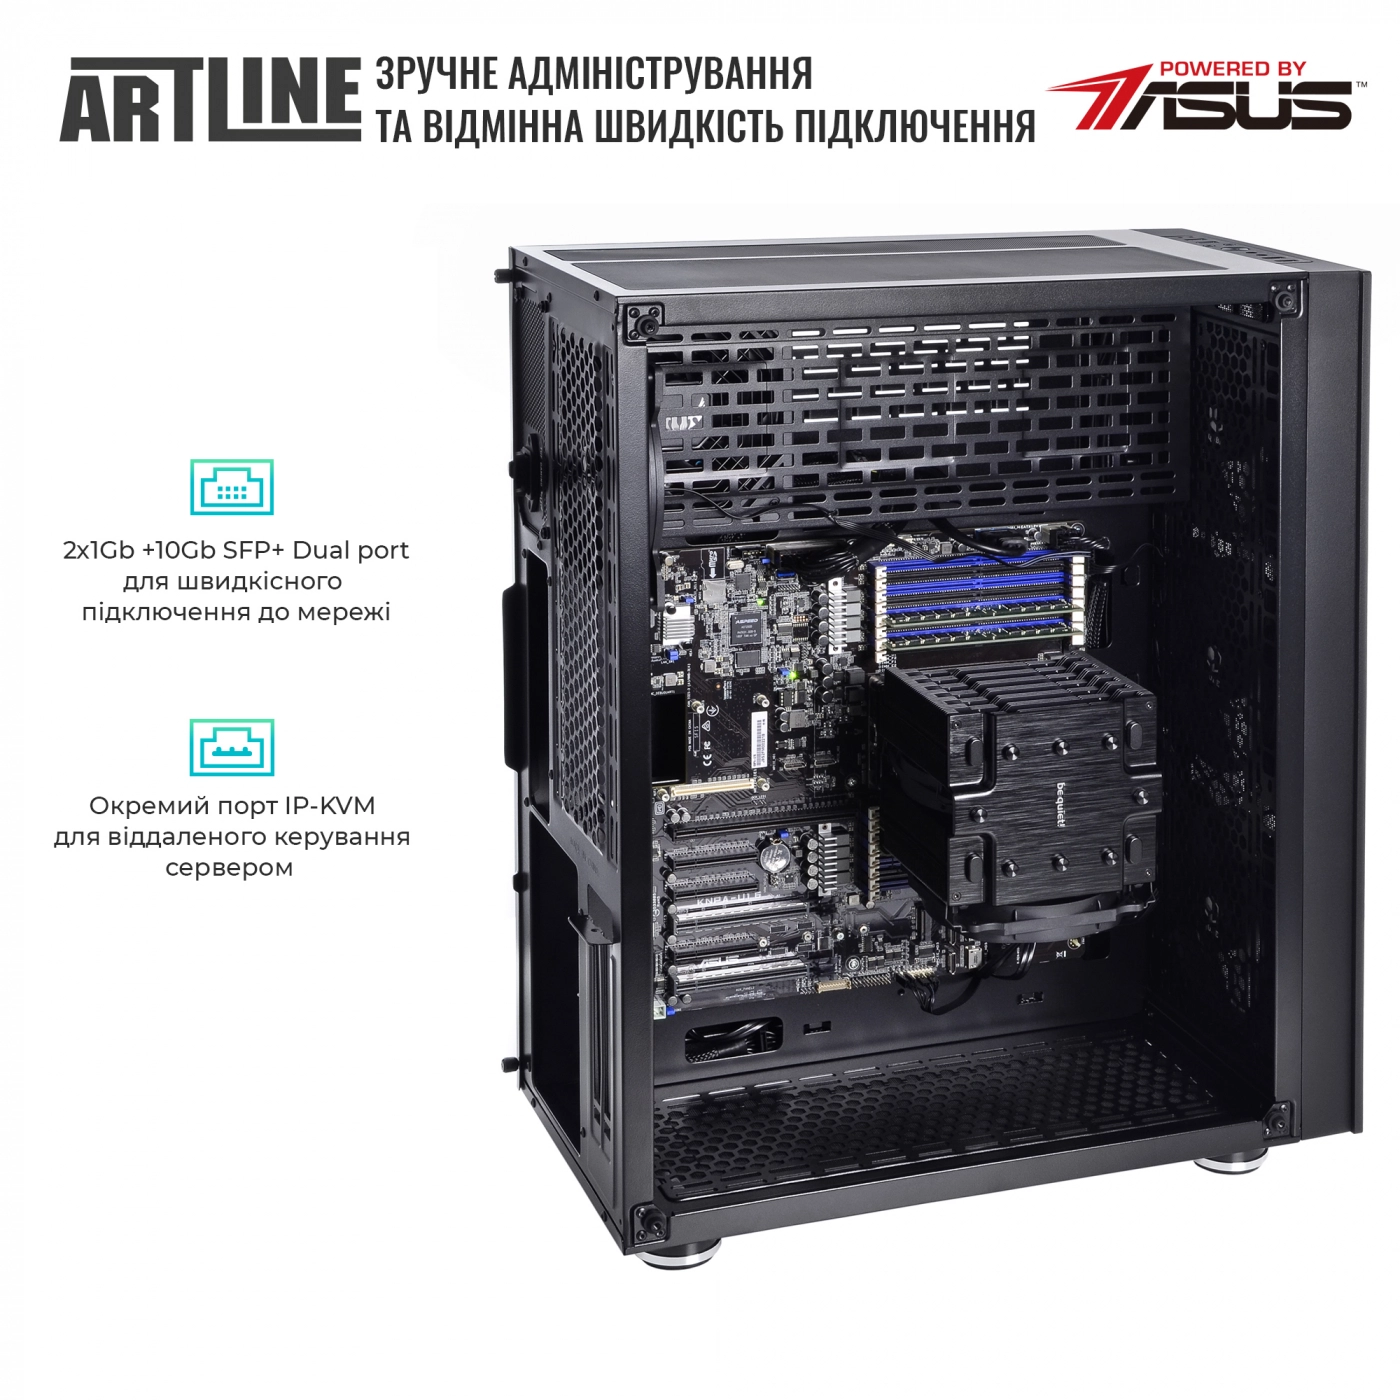 Купить Сервер ARTLINE Business T81v12 - фото 7